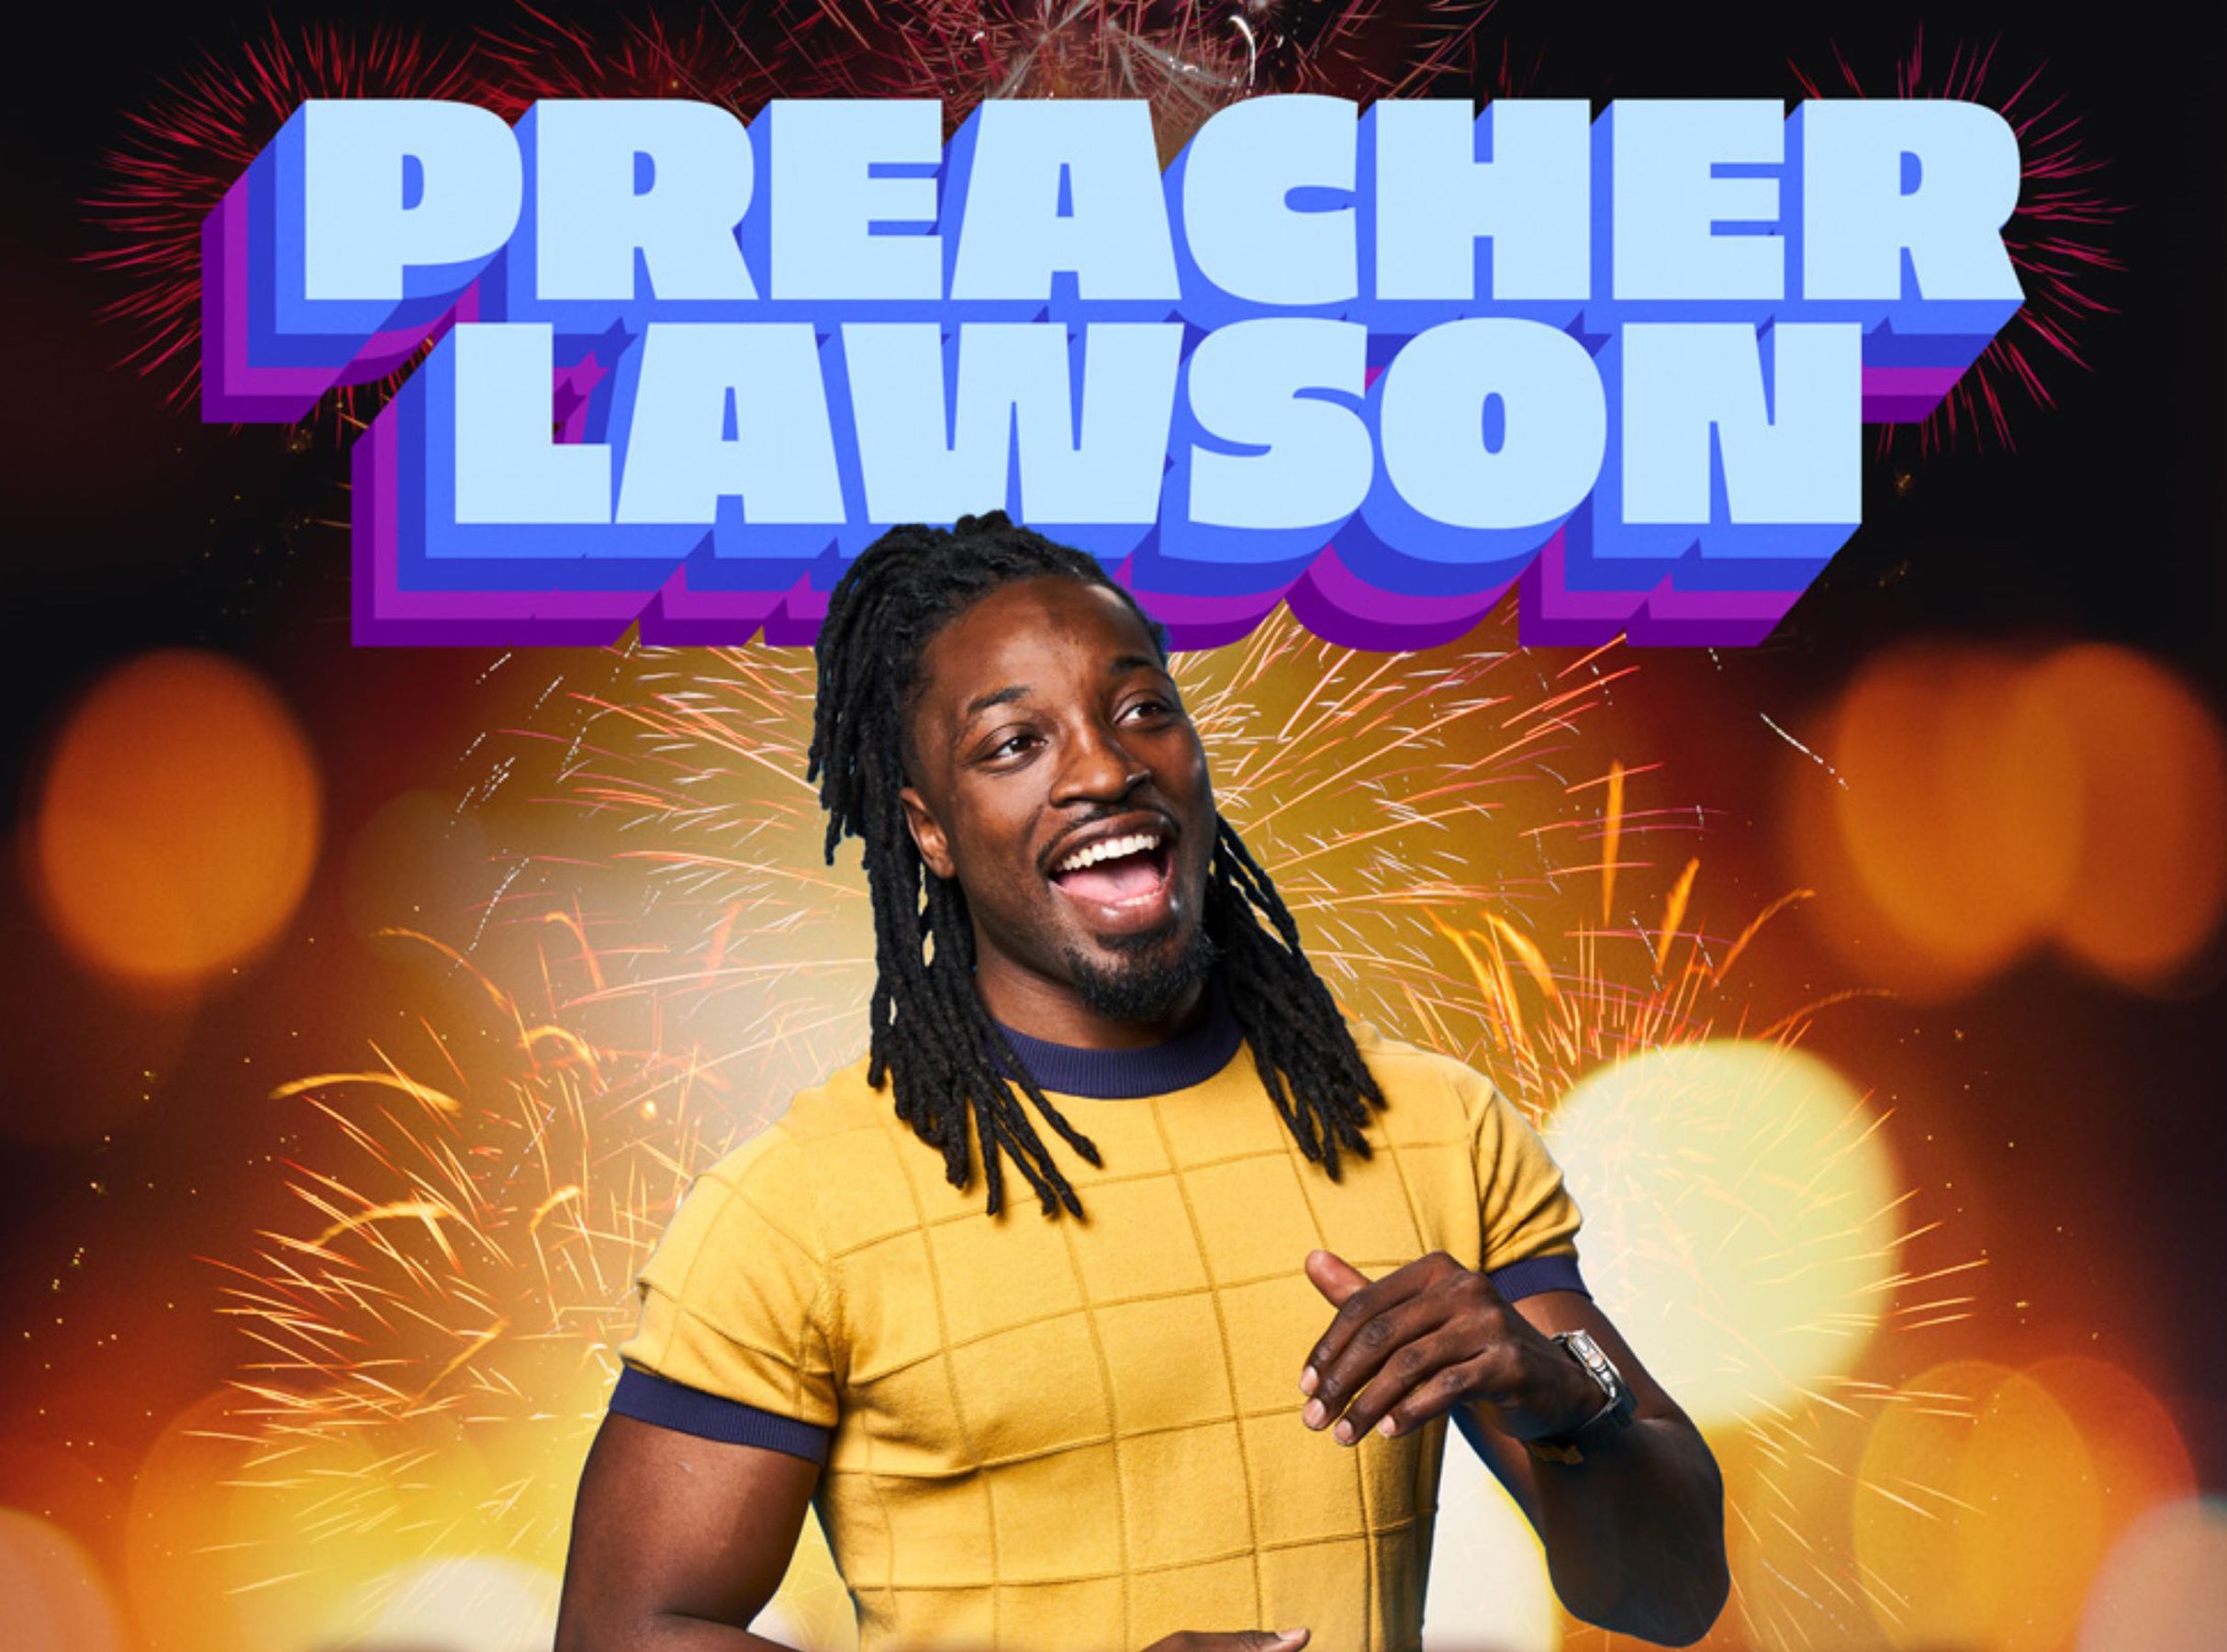 Preacher Lawson: Best Day Ever! presales in Newark